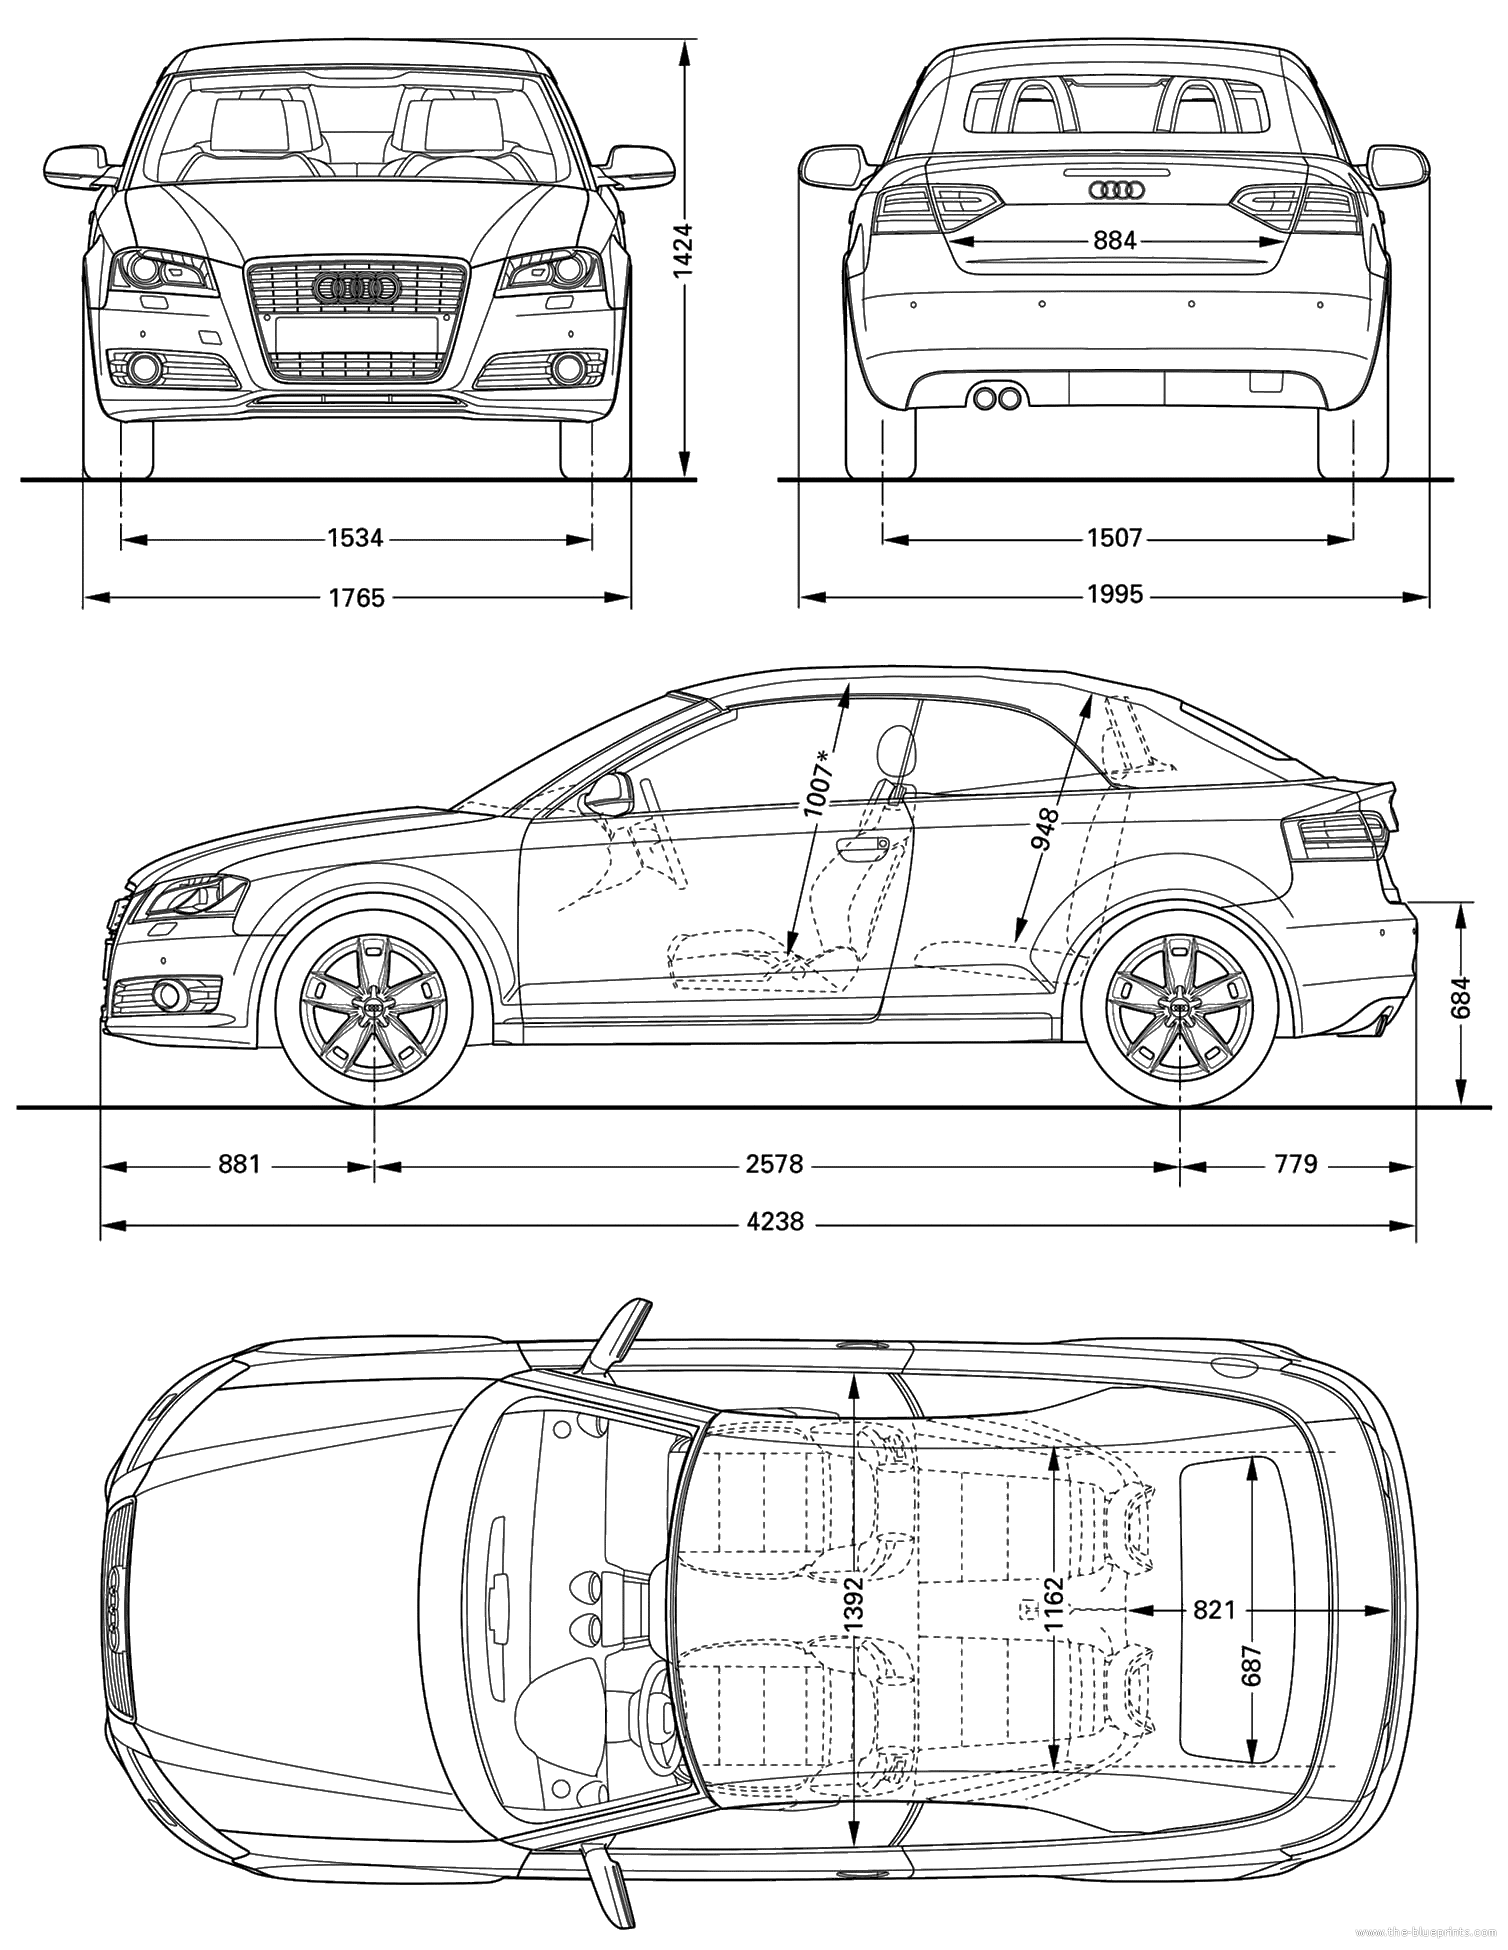 The Blueprints com Blueprints Cars Audi Audi A3 Cabriolet